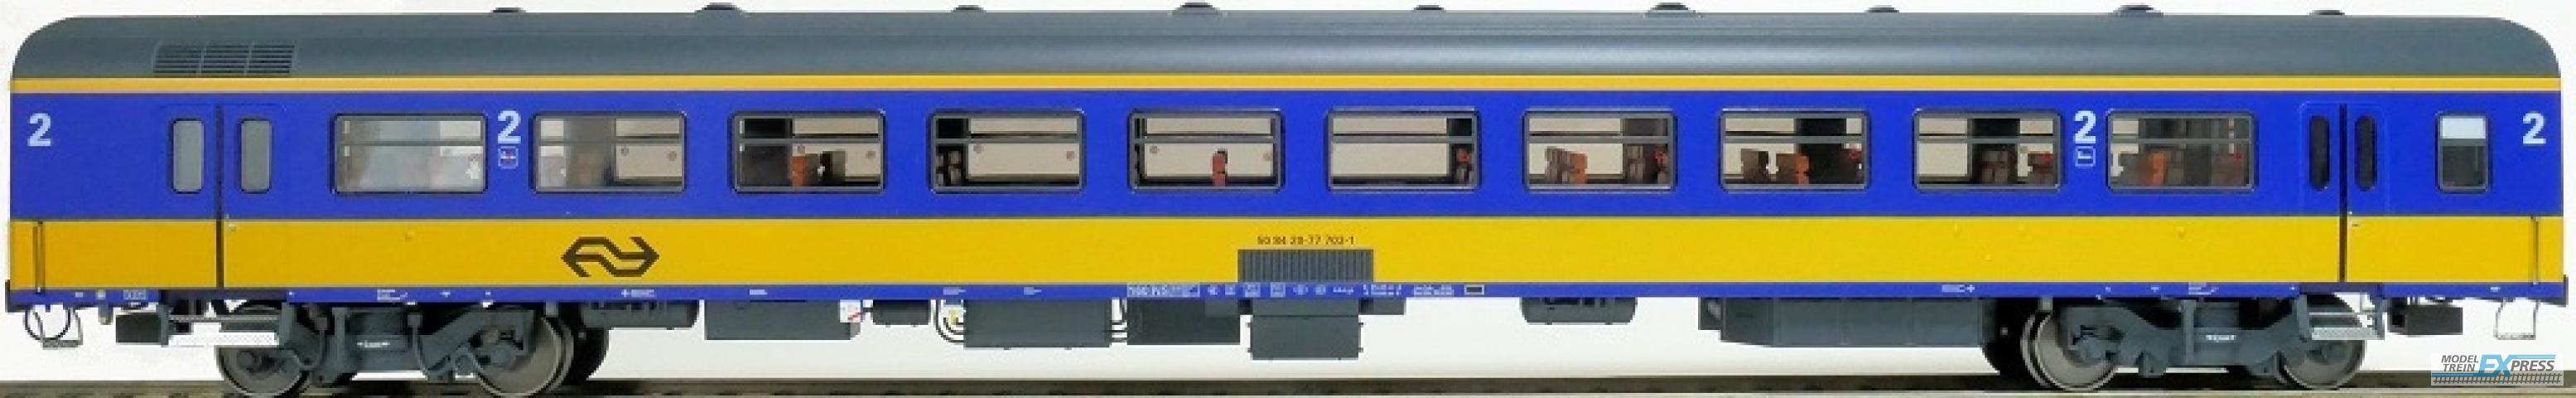 Exact-train 11165 NS ICR (Originalversion) für den Inlandseinsatz Reisezugwagen B (Farbe Gelb / Blau) mit Beleuchtung und Figuren, Ep. IV